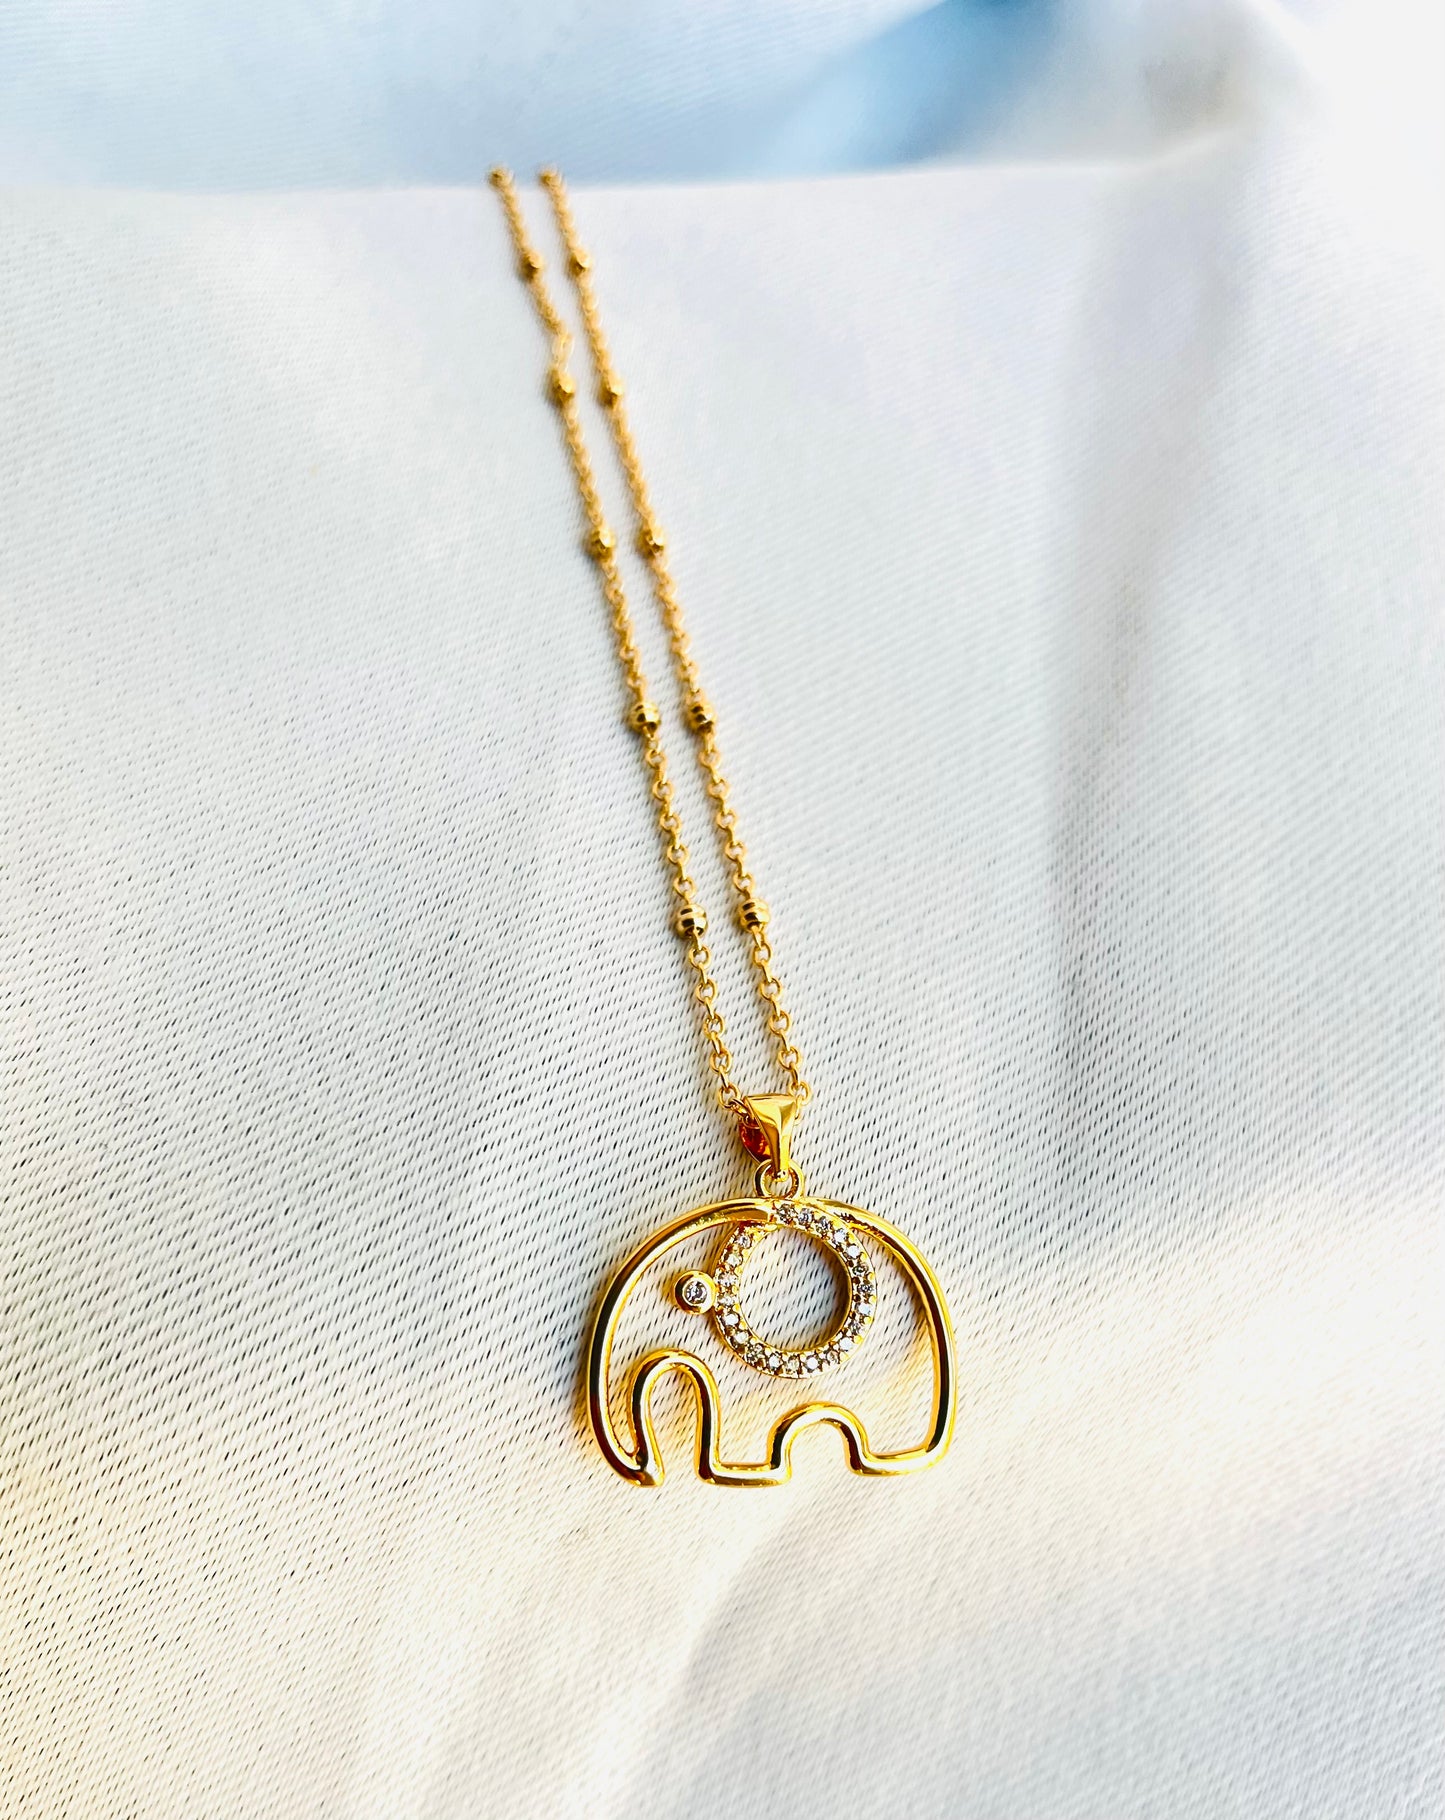 The Original Elephant Necklace